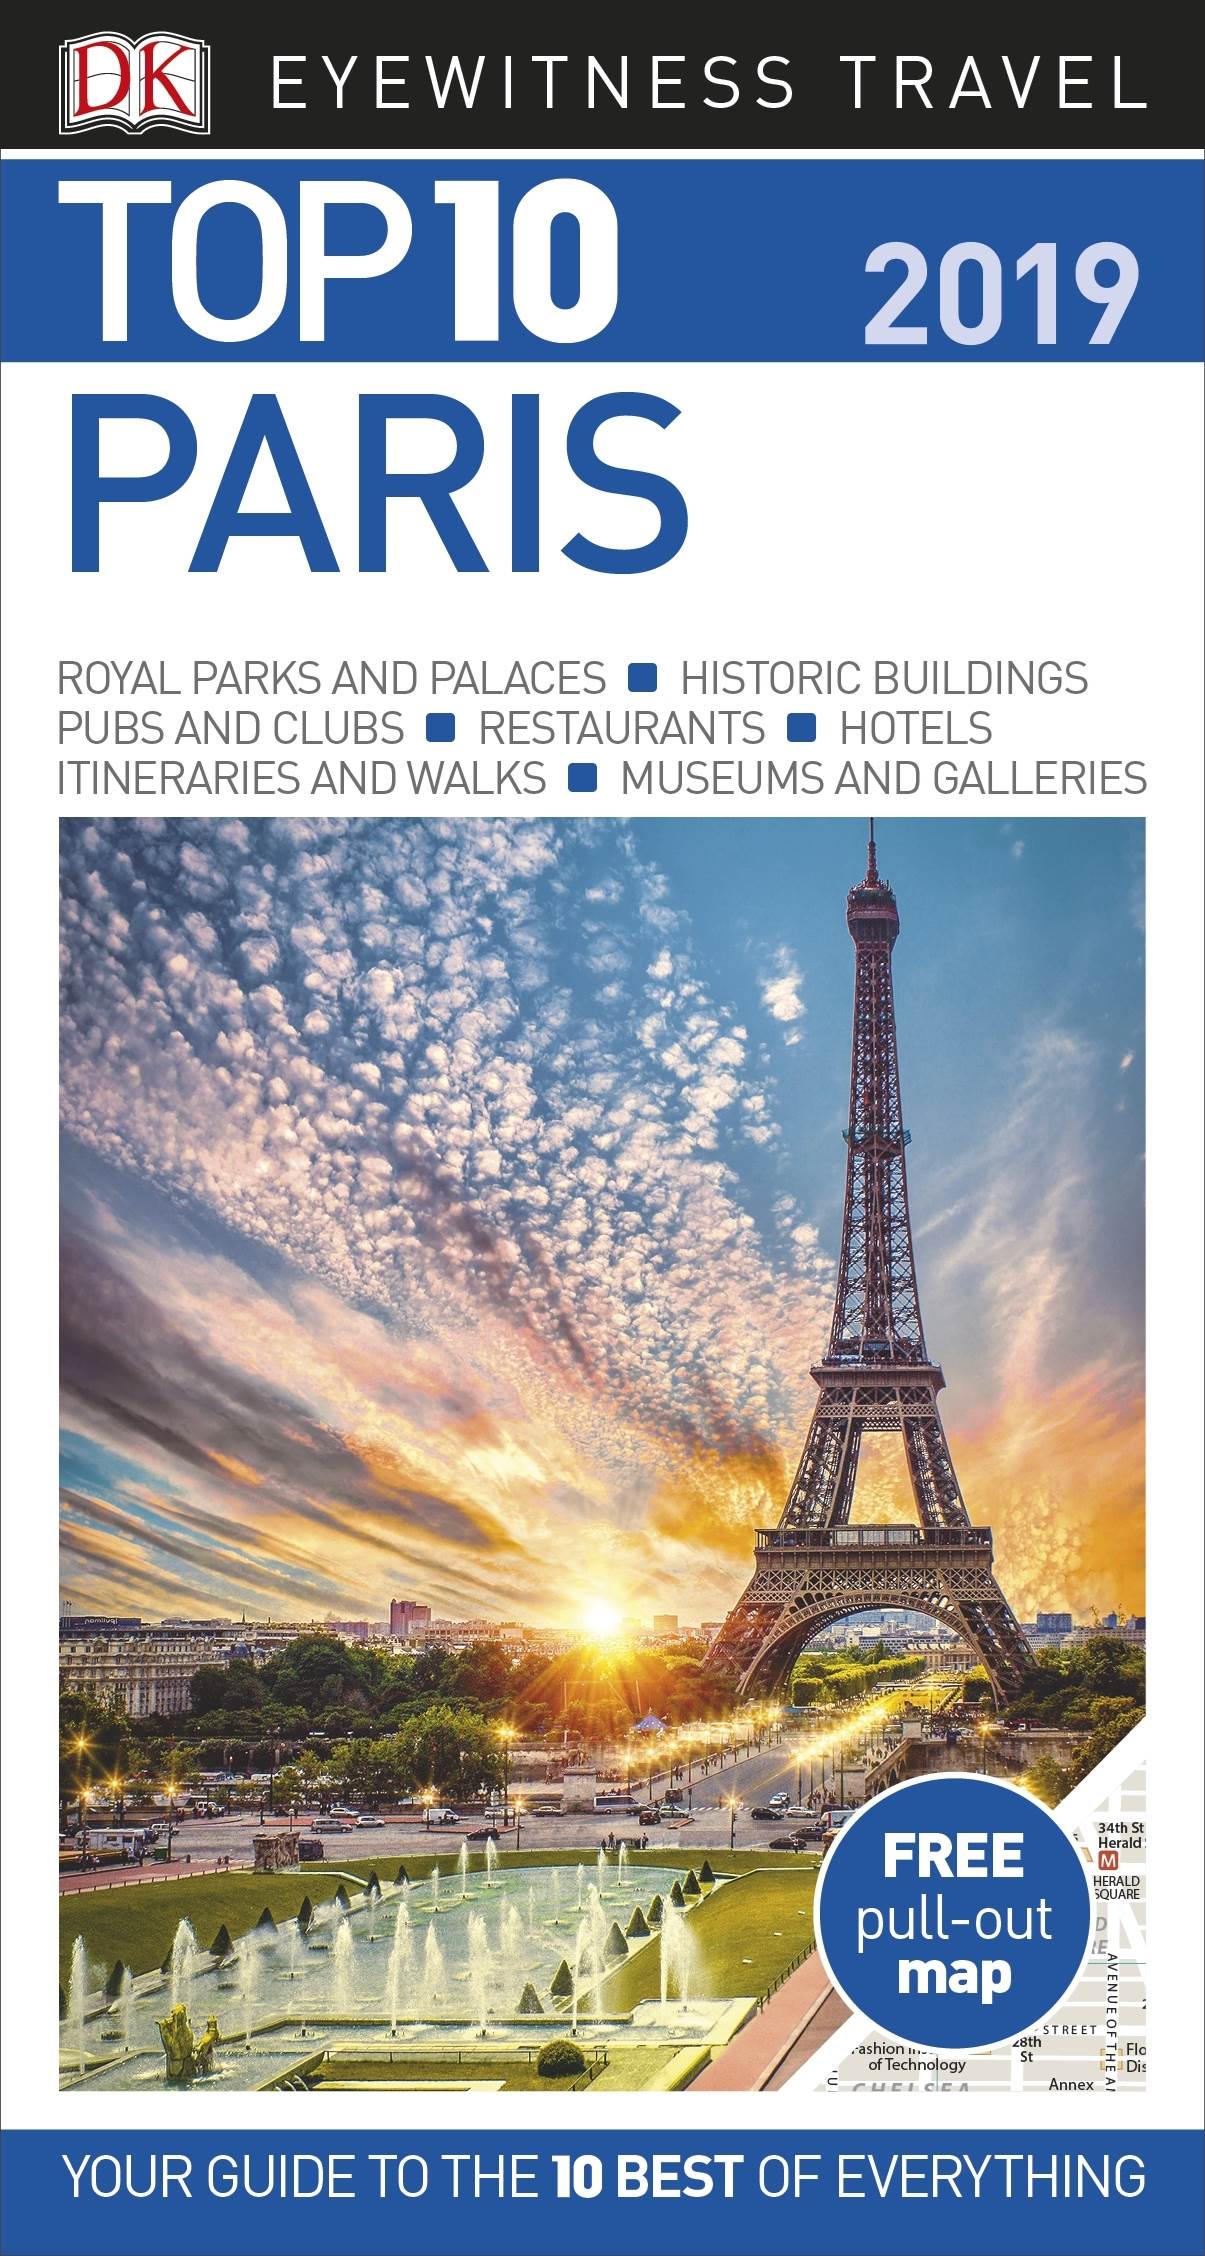 Travel　DK　Eyewitness　Guide　Travel　Top　by　10　Paris　DK　Eyewitness　Guides　(9780241311615)